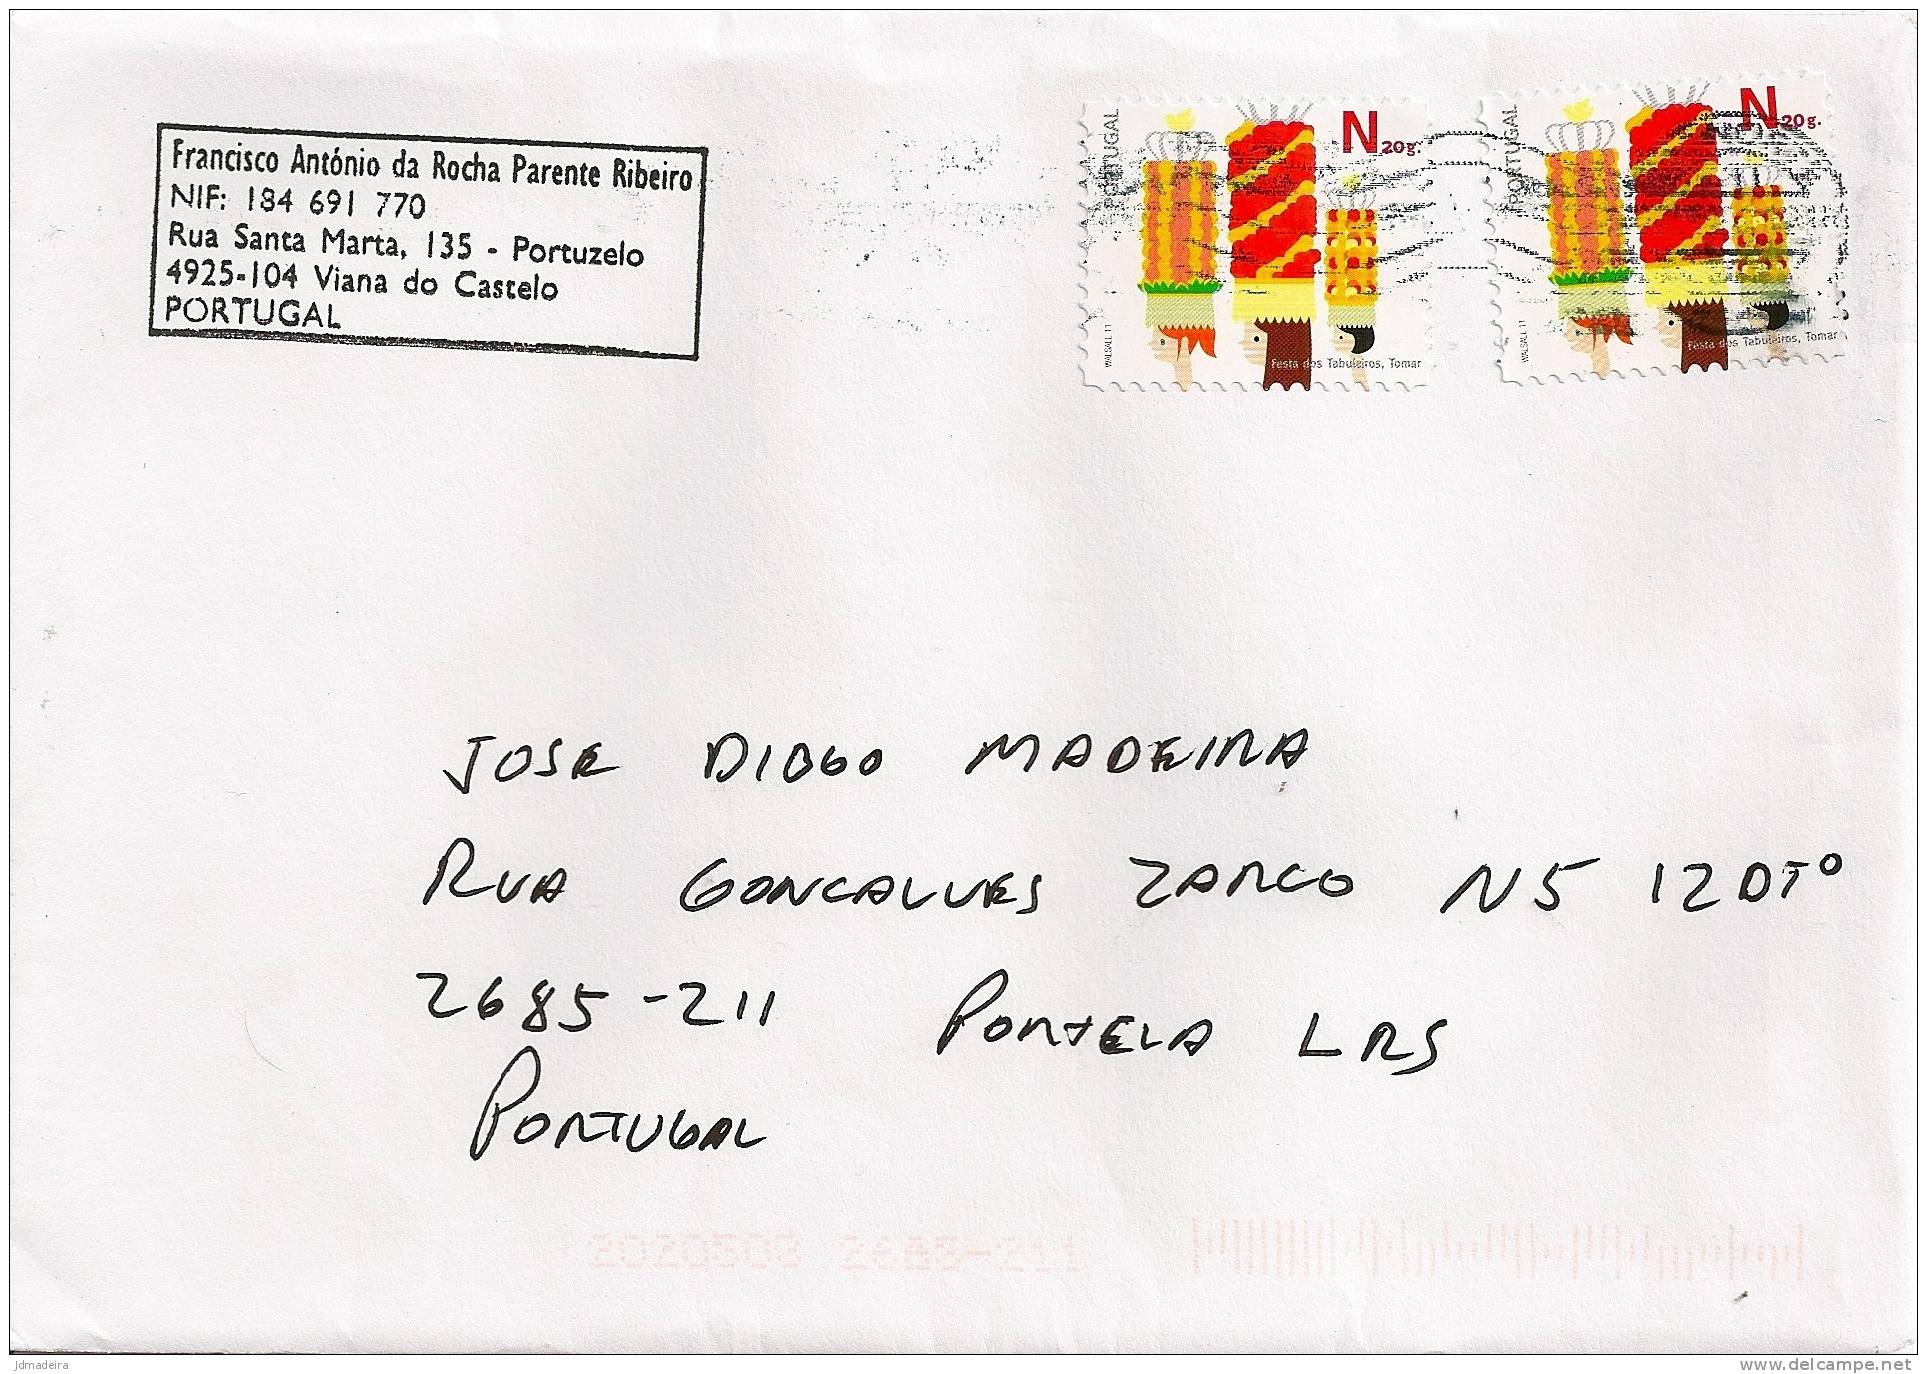 Portugal Cover - Briefe U. Dokumente